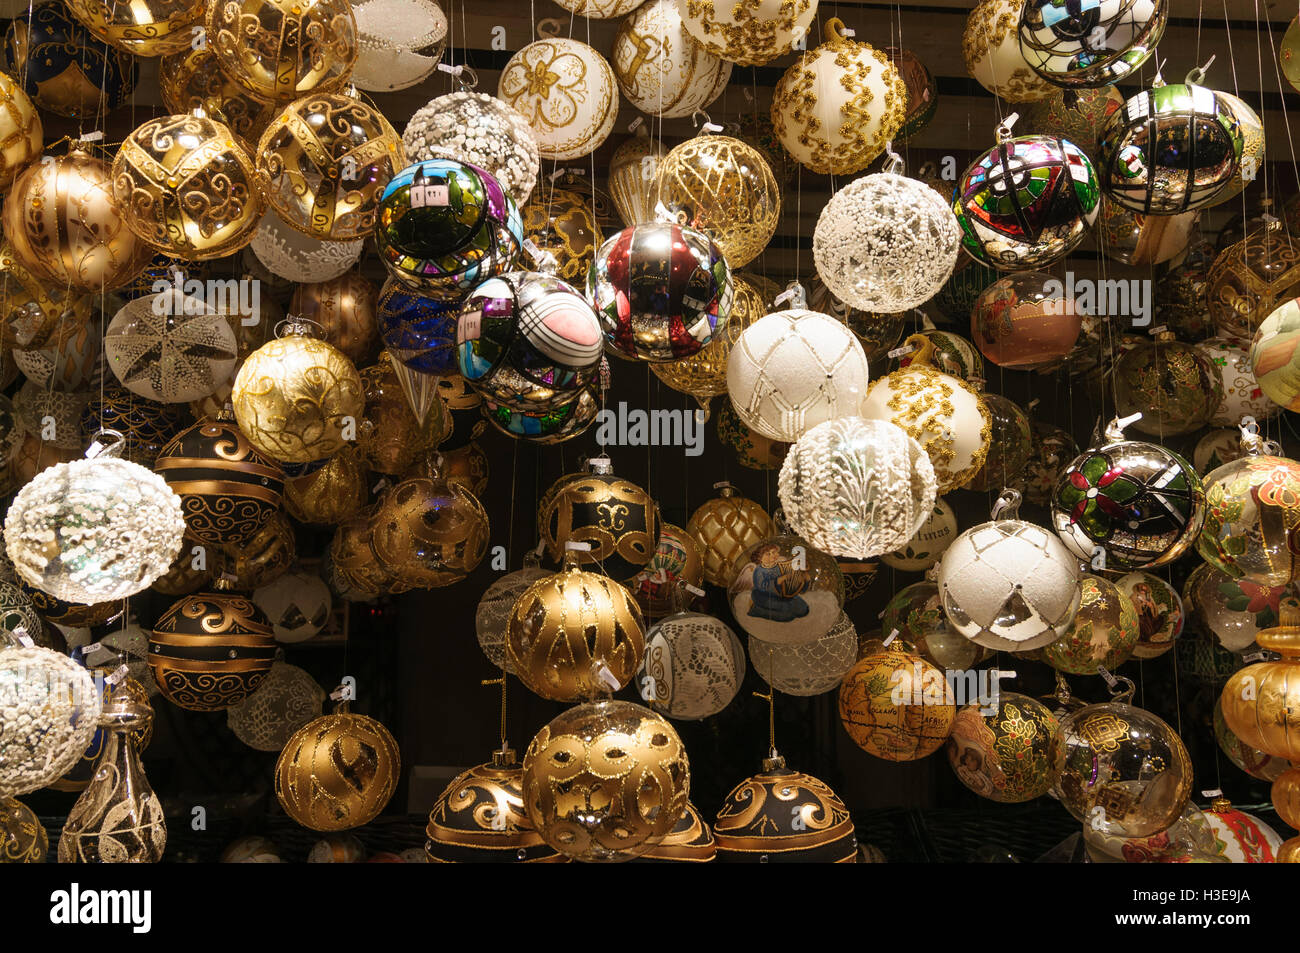 Wien, Vienna: Balls for sale at Christmas market " Christkindlmarkt ", 01., Wien, Austria Stock Photo